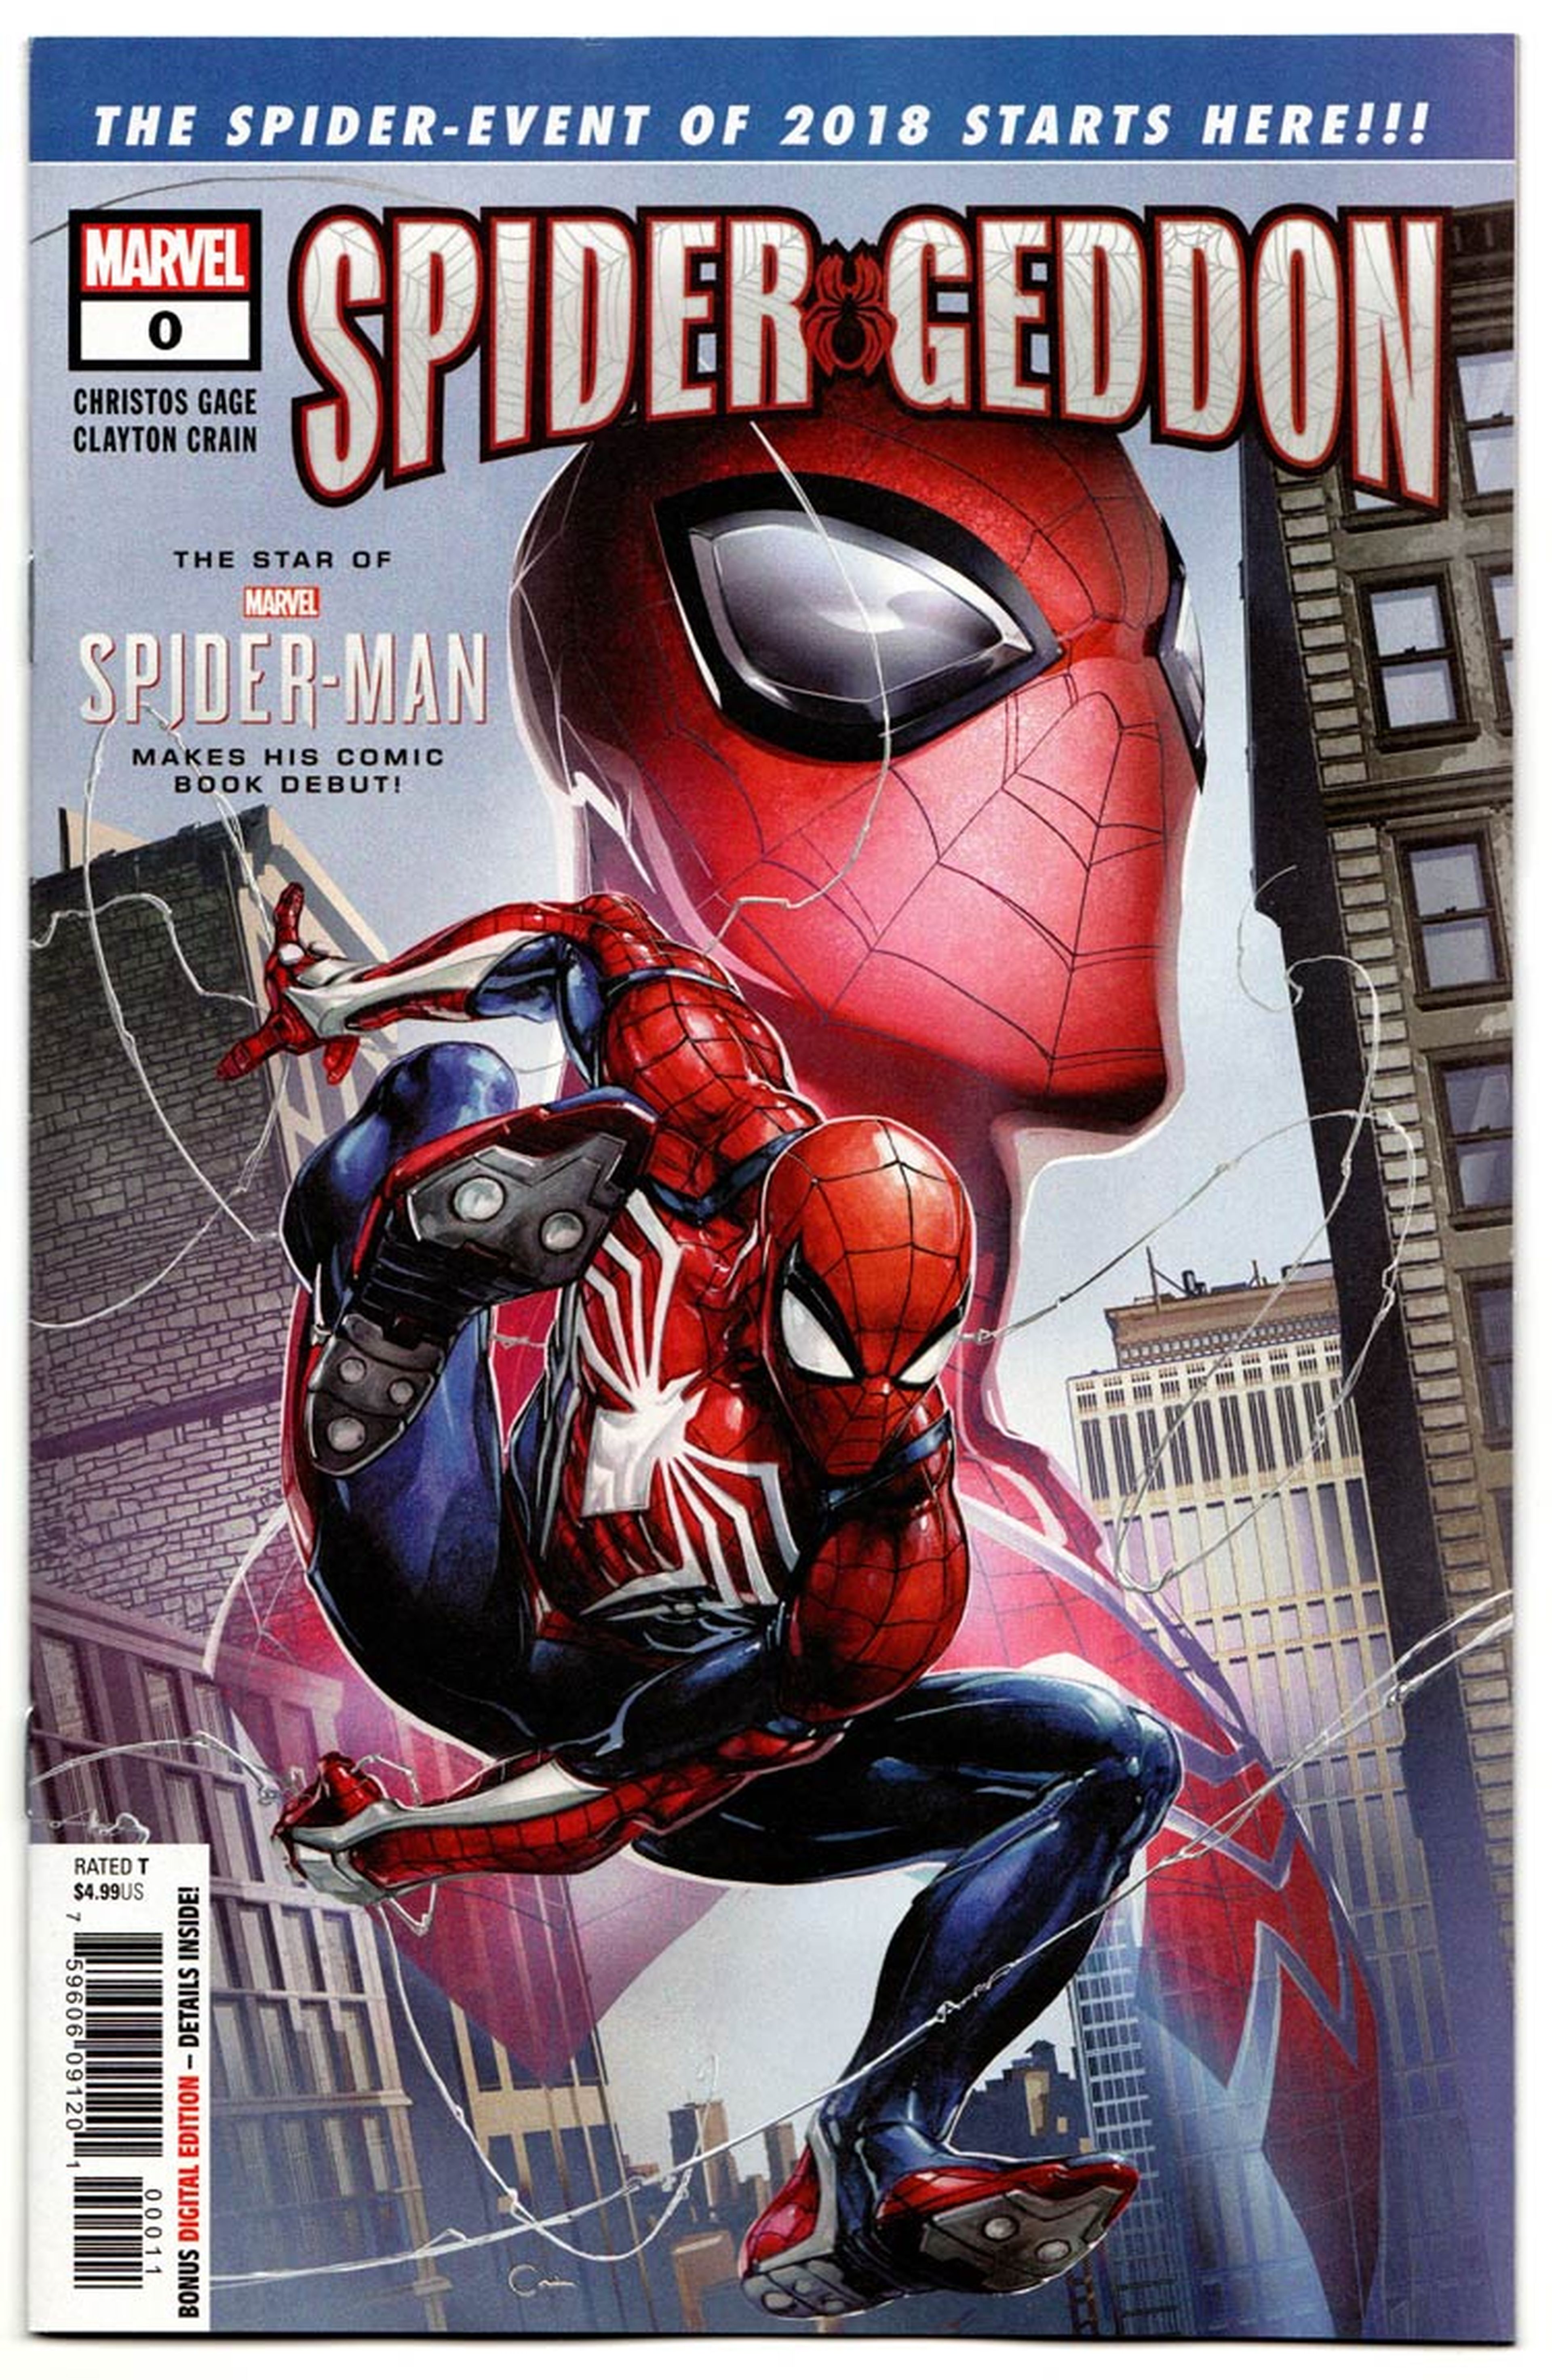 Spider-Gedon nº0 USA - Spider-man